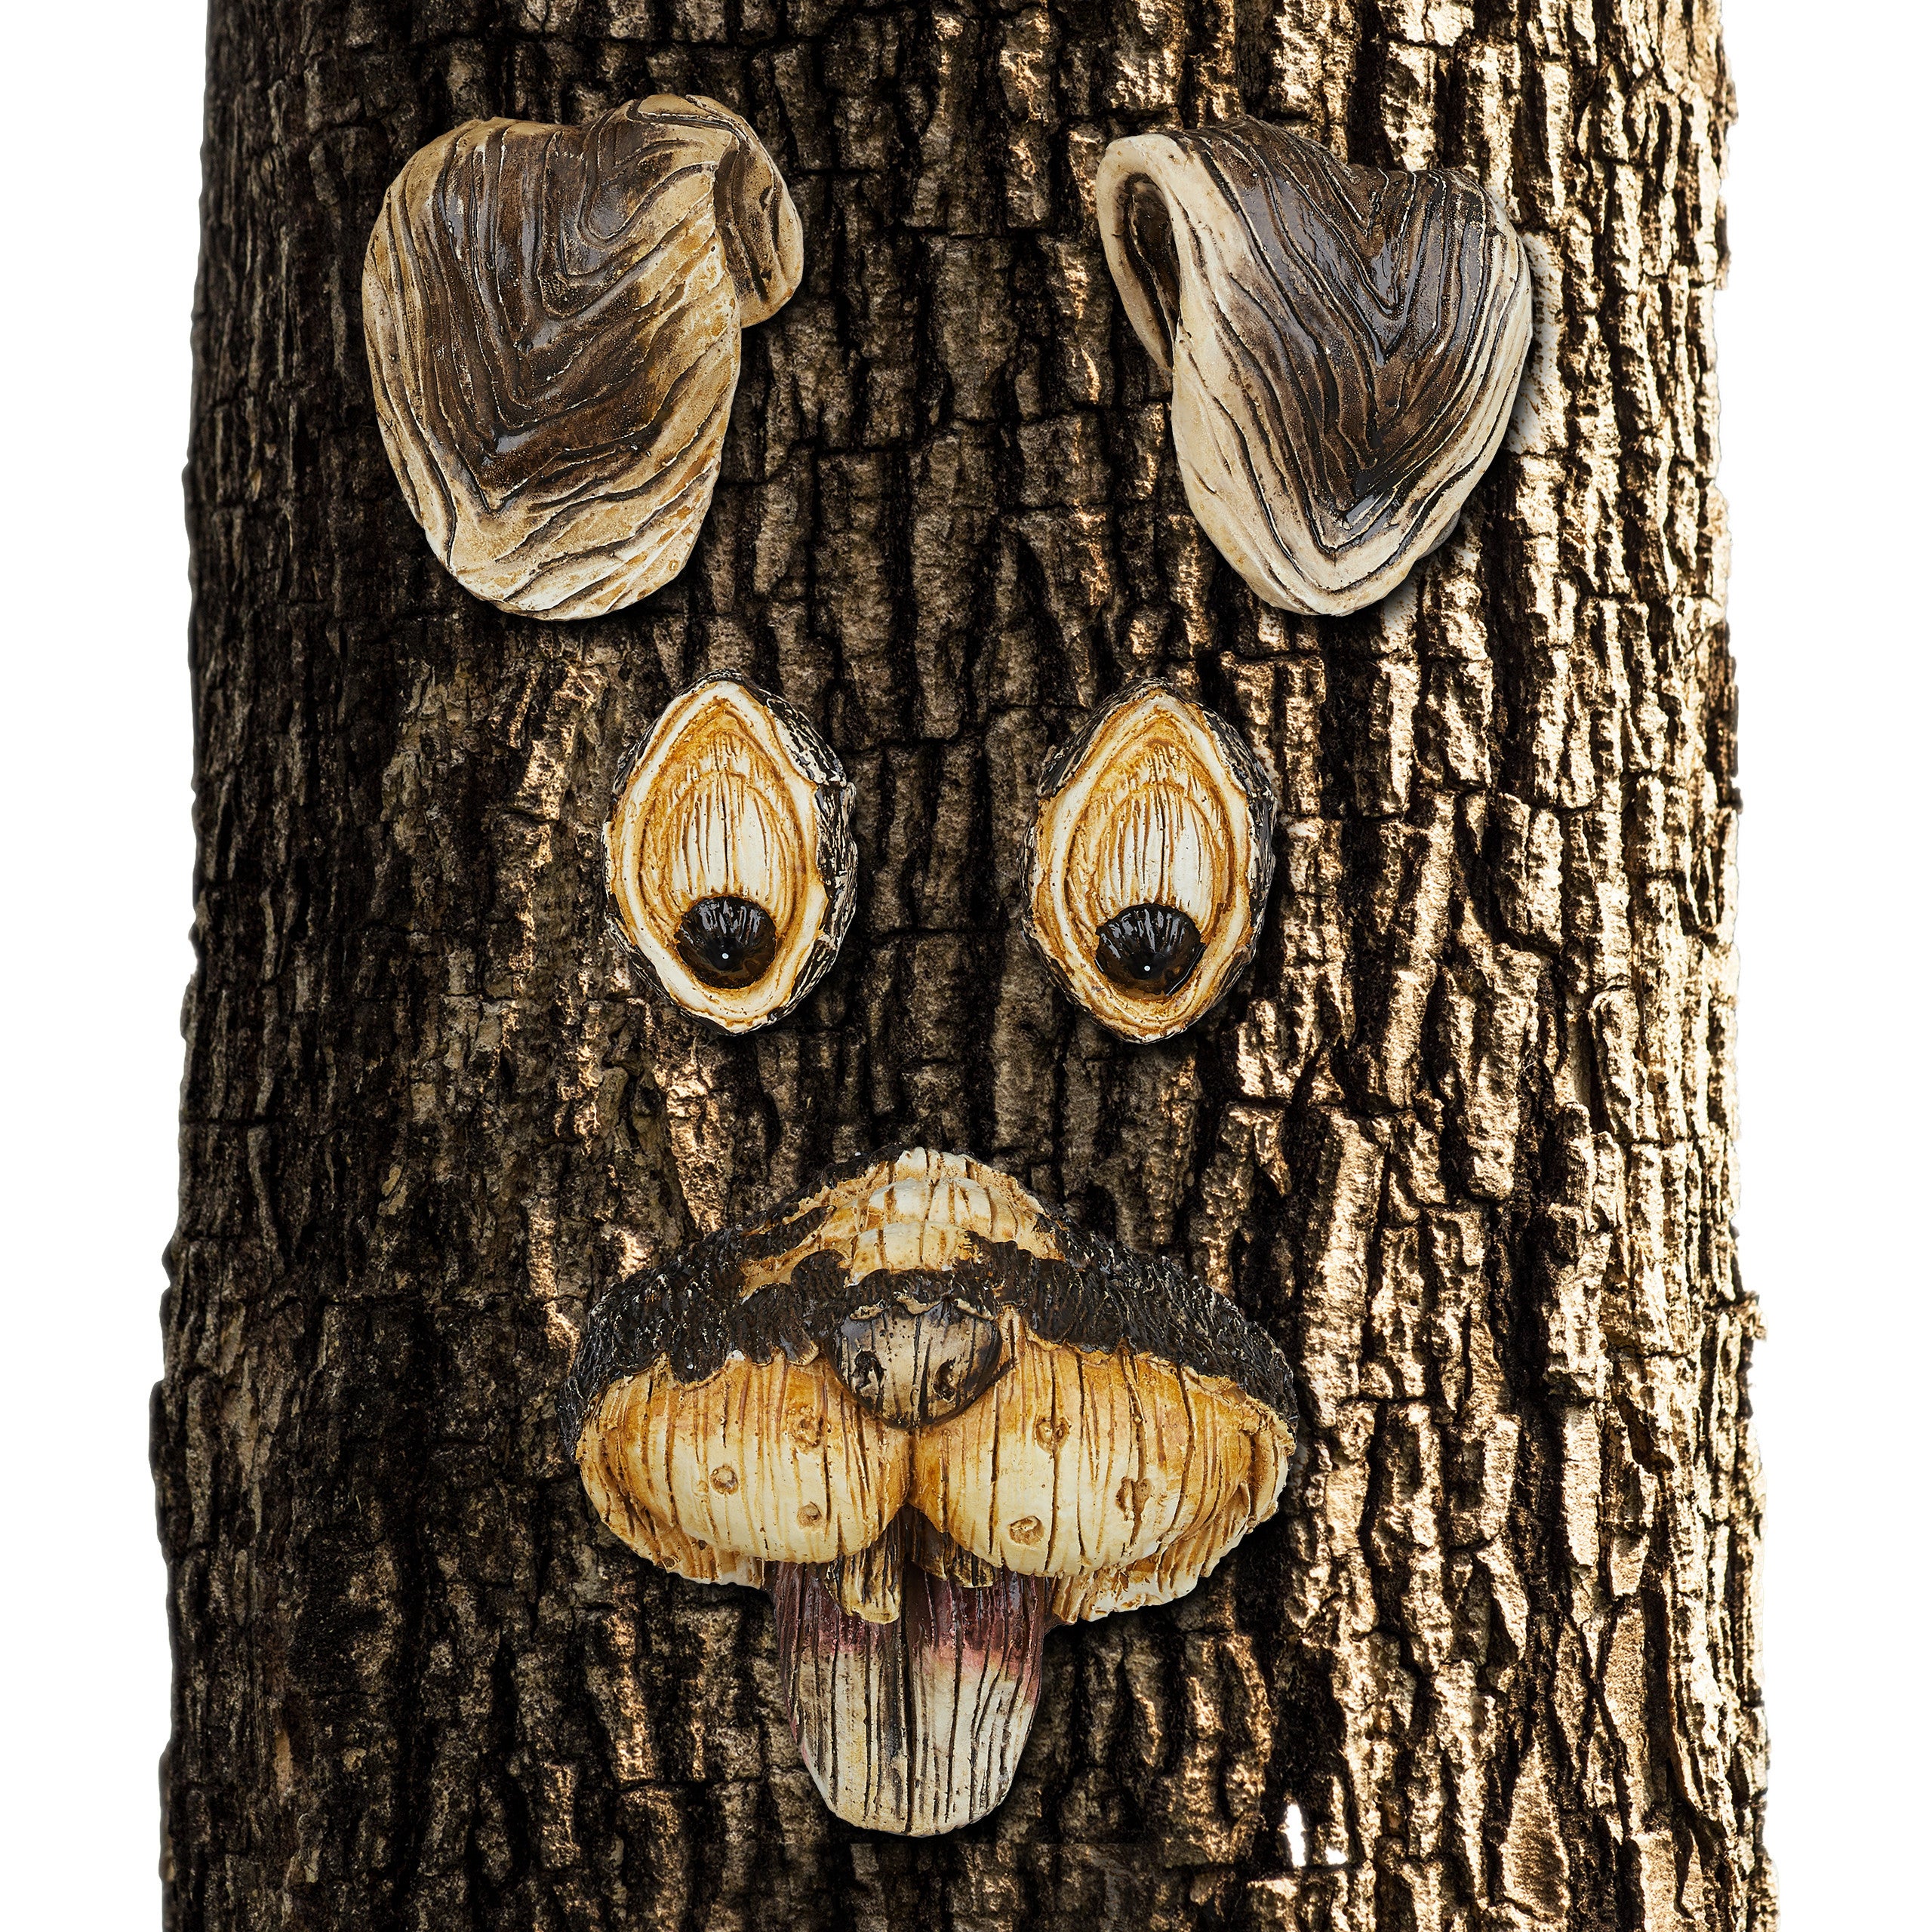 Visage d'arbre, décoration pour tronc d'arbre, décoration de